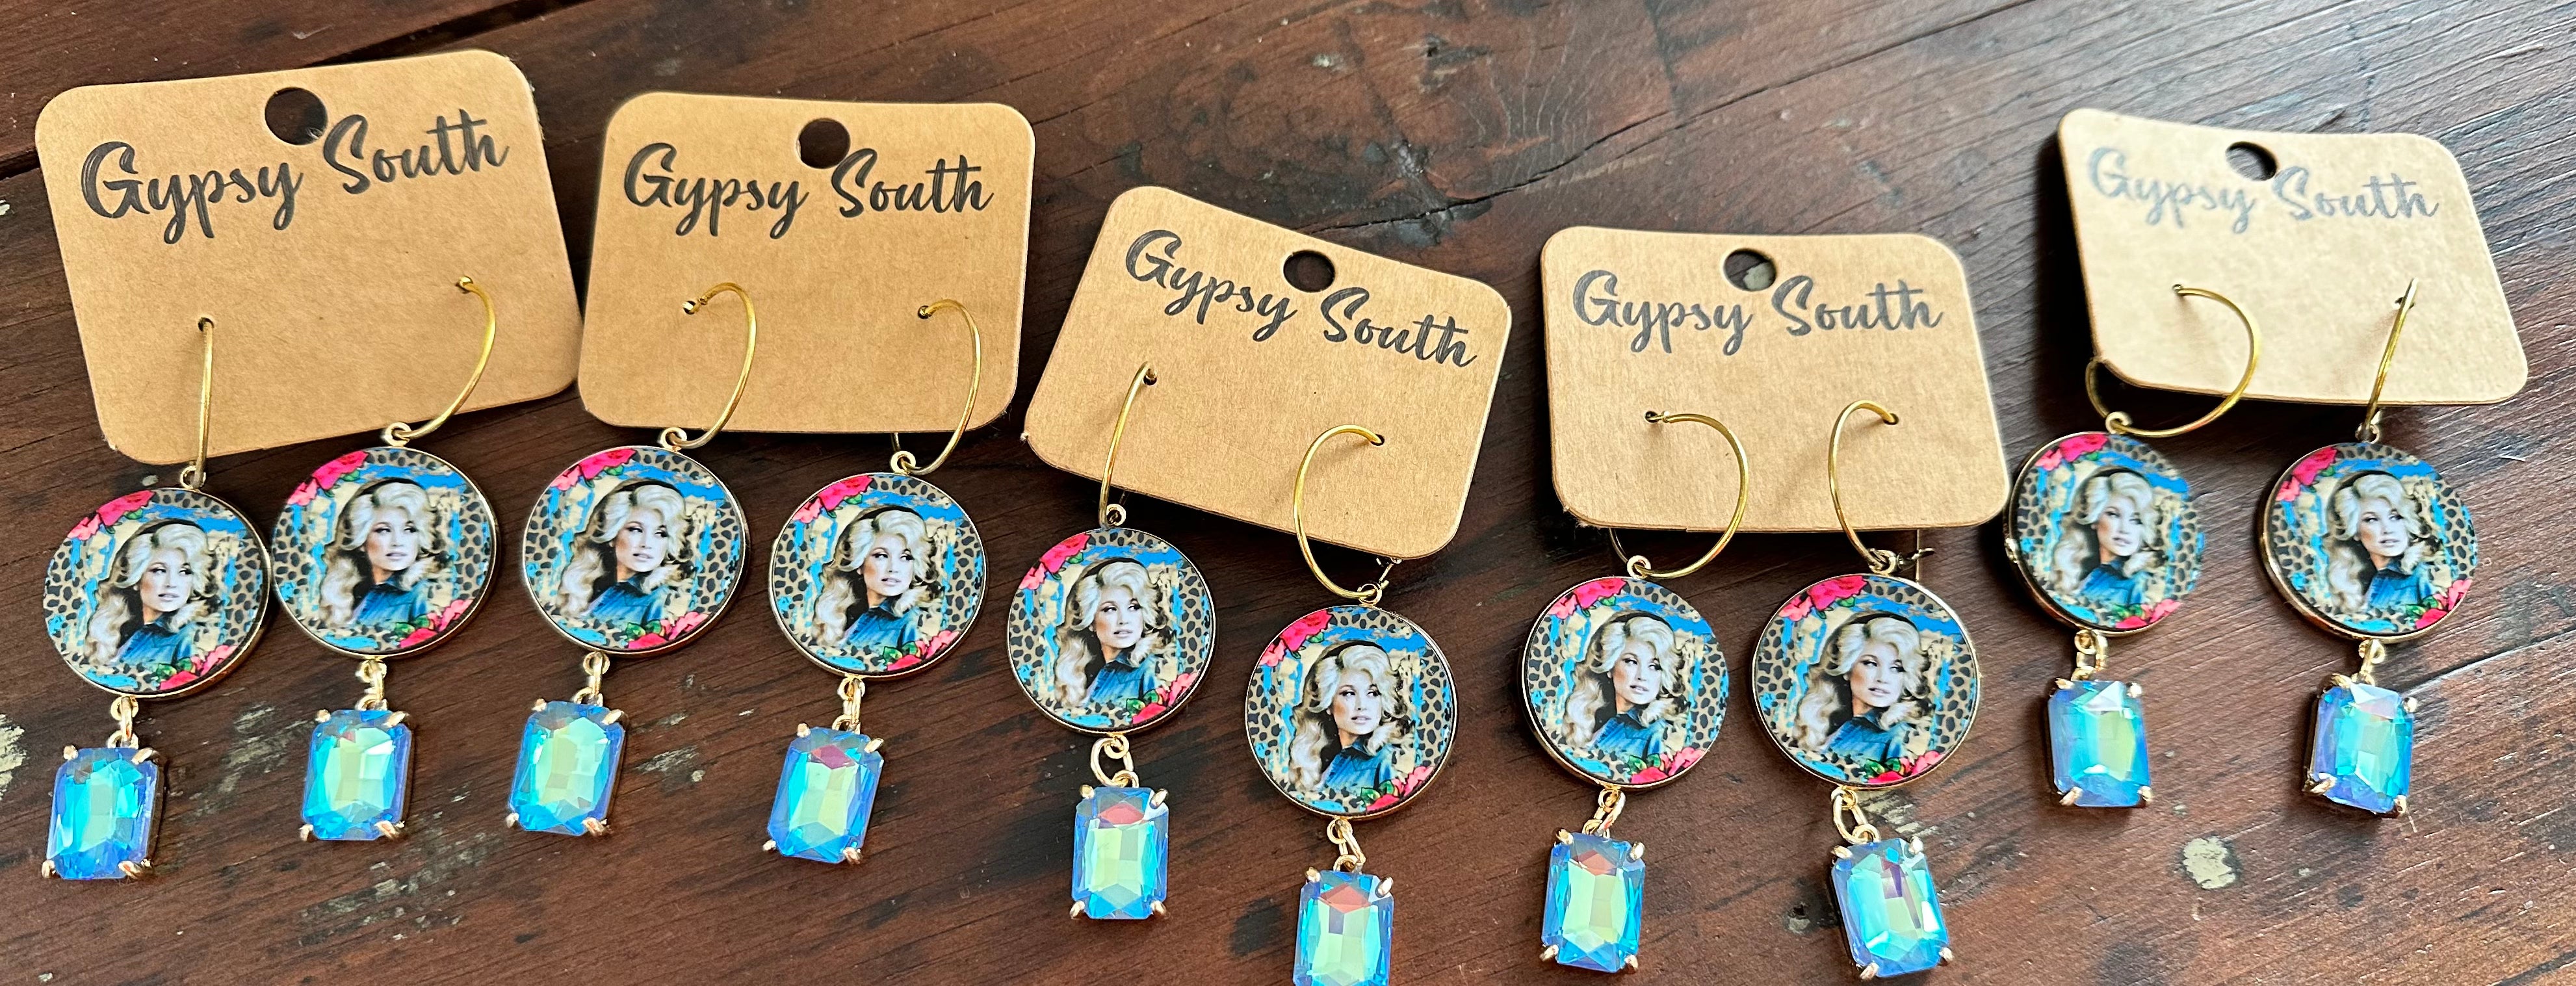 Gypsy South Dazzling Dolly Earrings